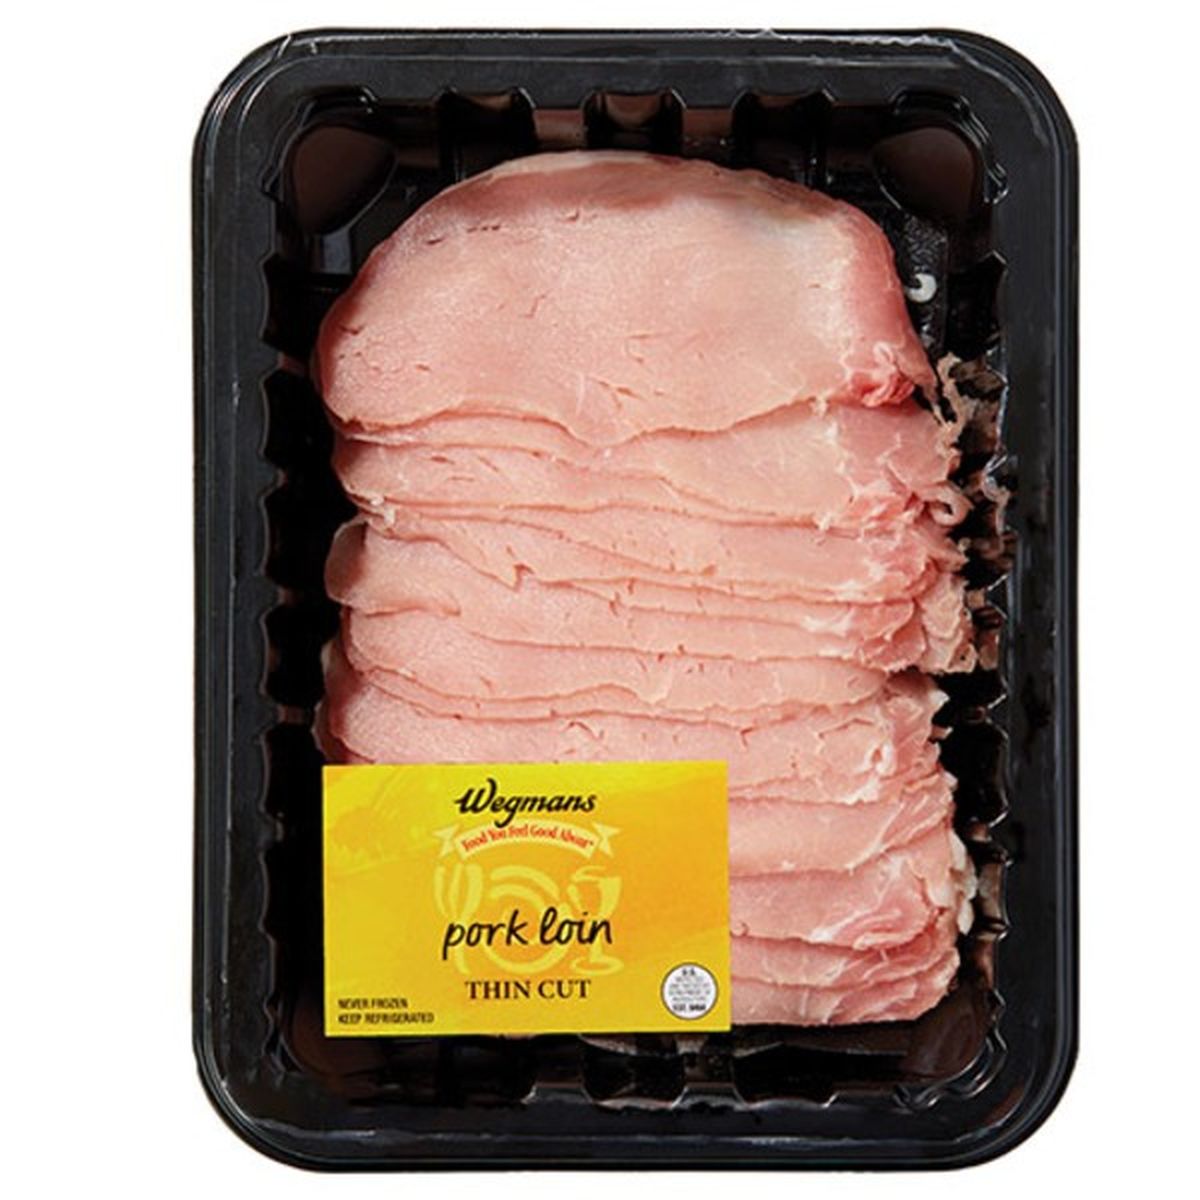 Calories in Wegmans Thin Cut Pork Loin